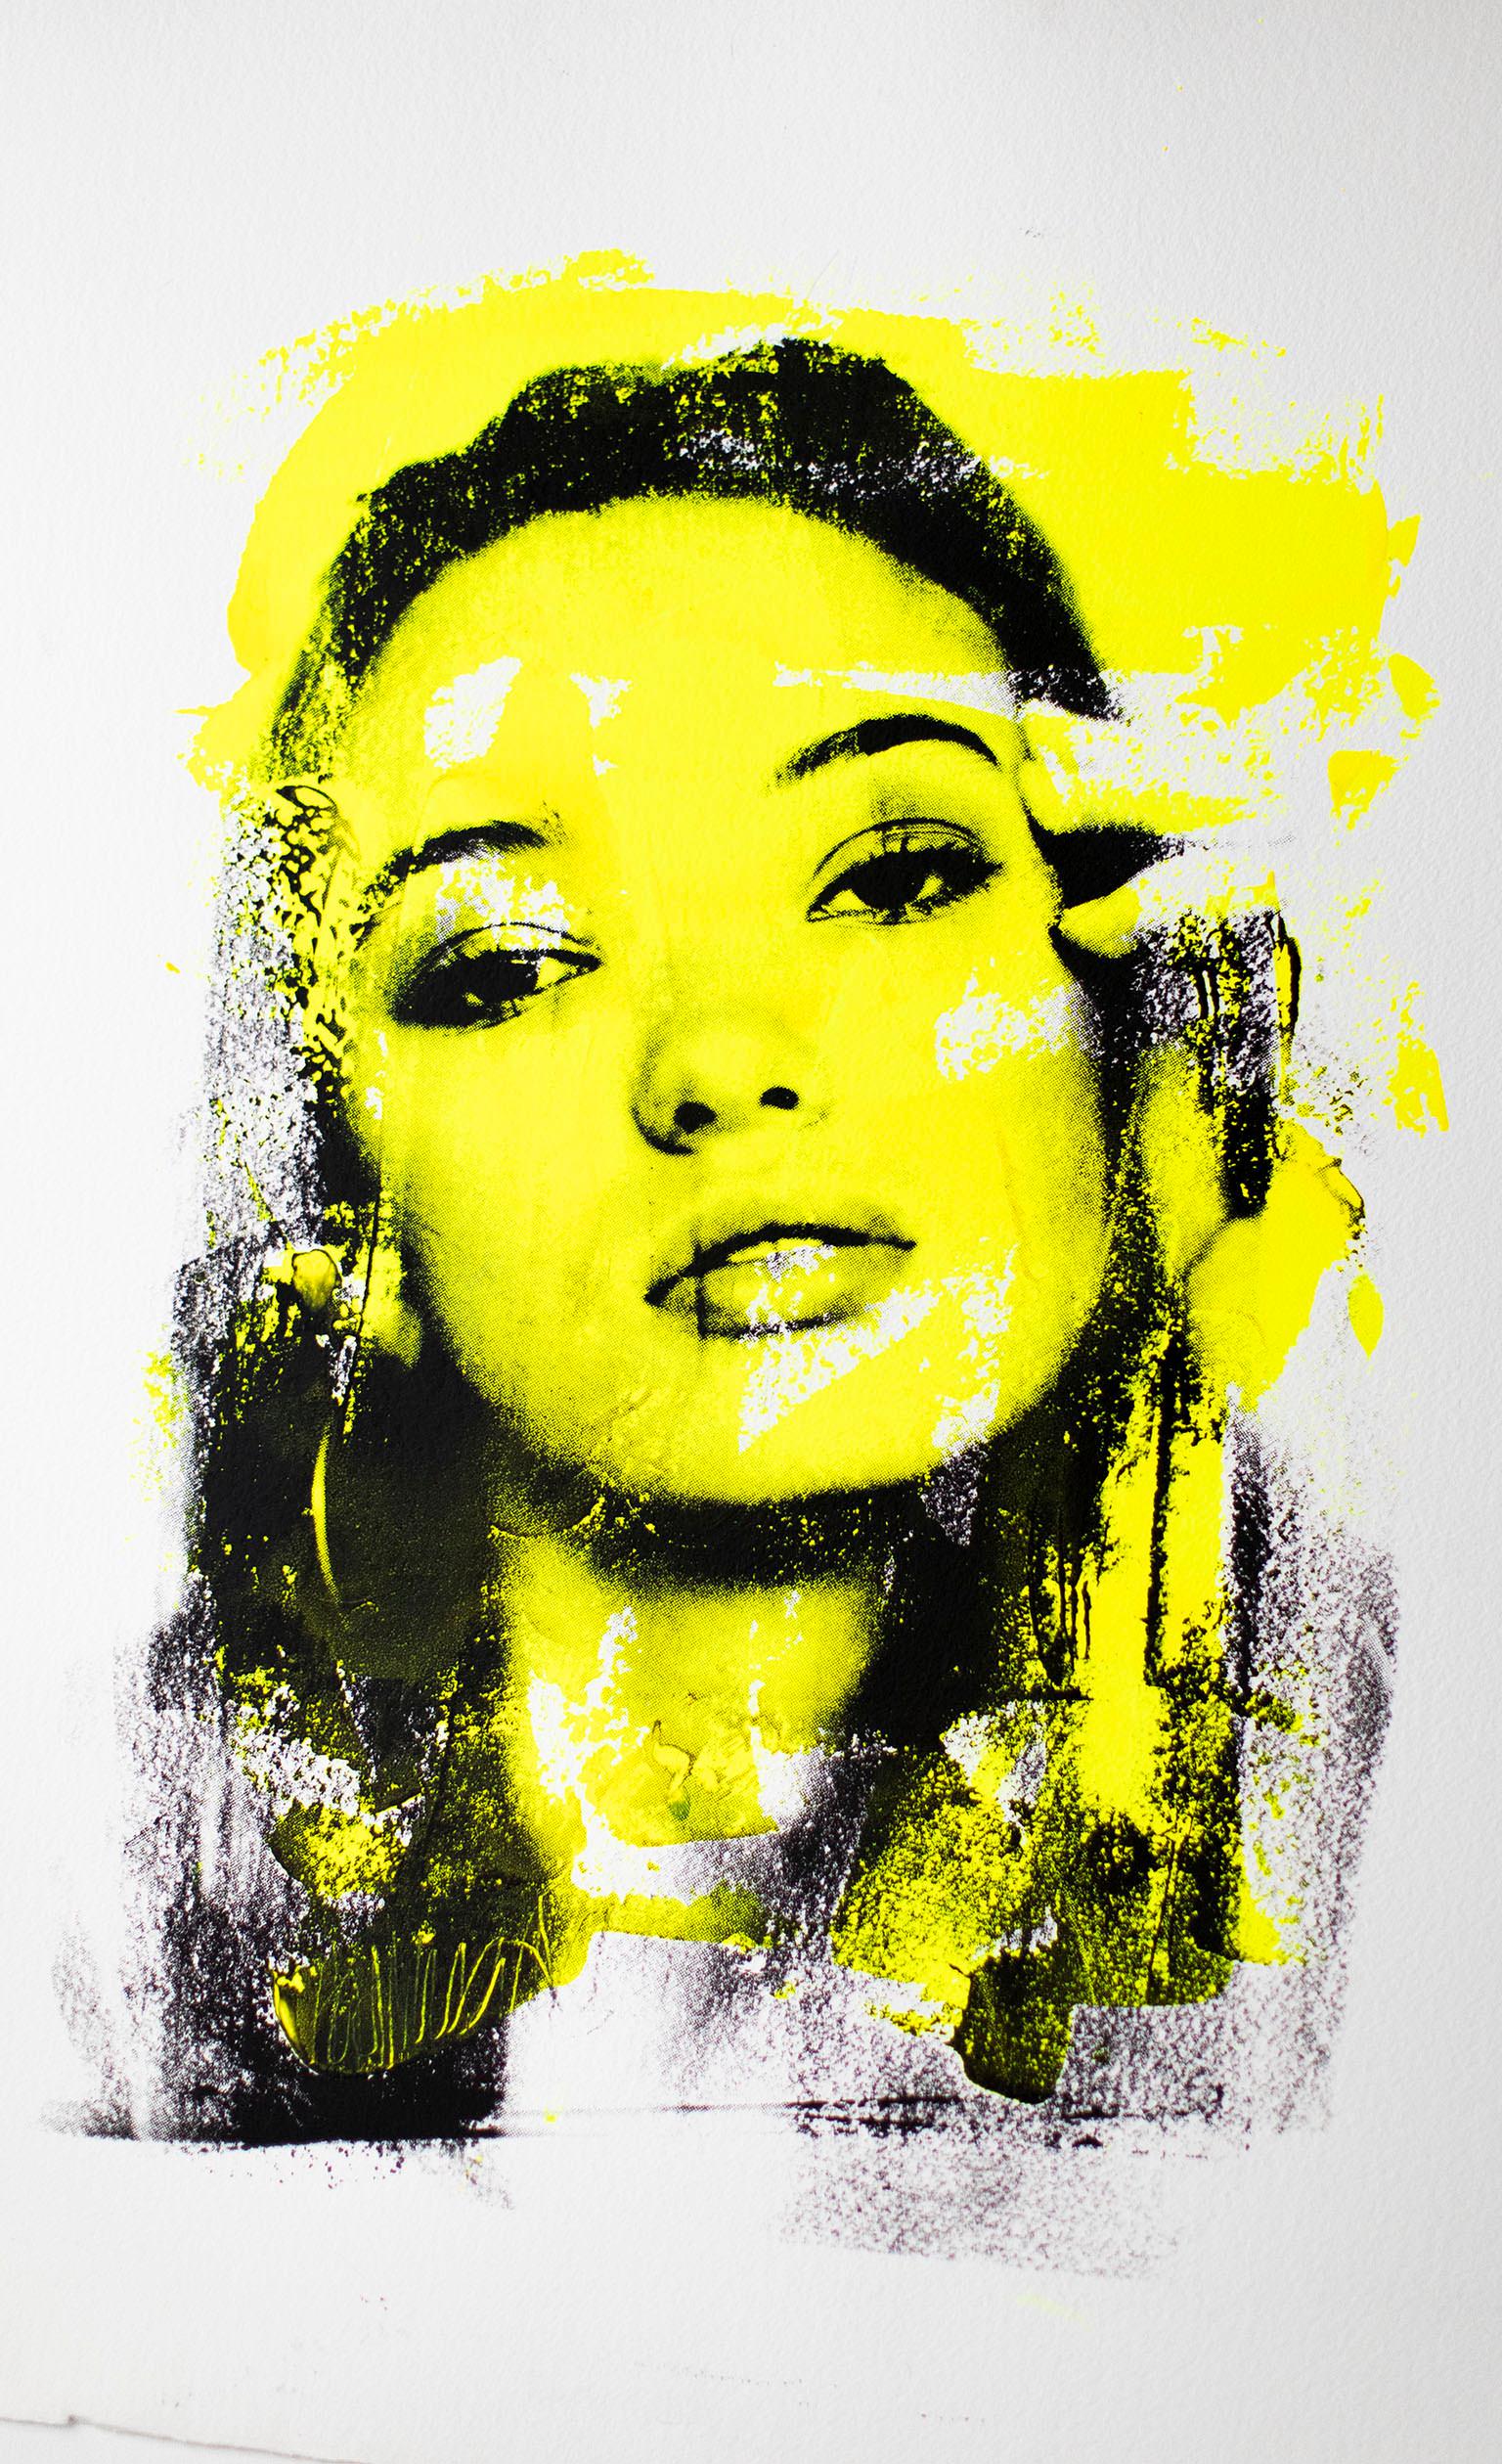 Peinture jaune, portrait Pop Art, Pop Art-Are You Still There? en jaune

A.I.C.S. :
